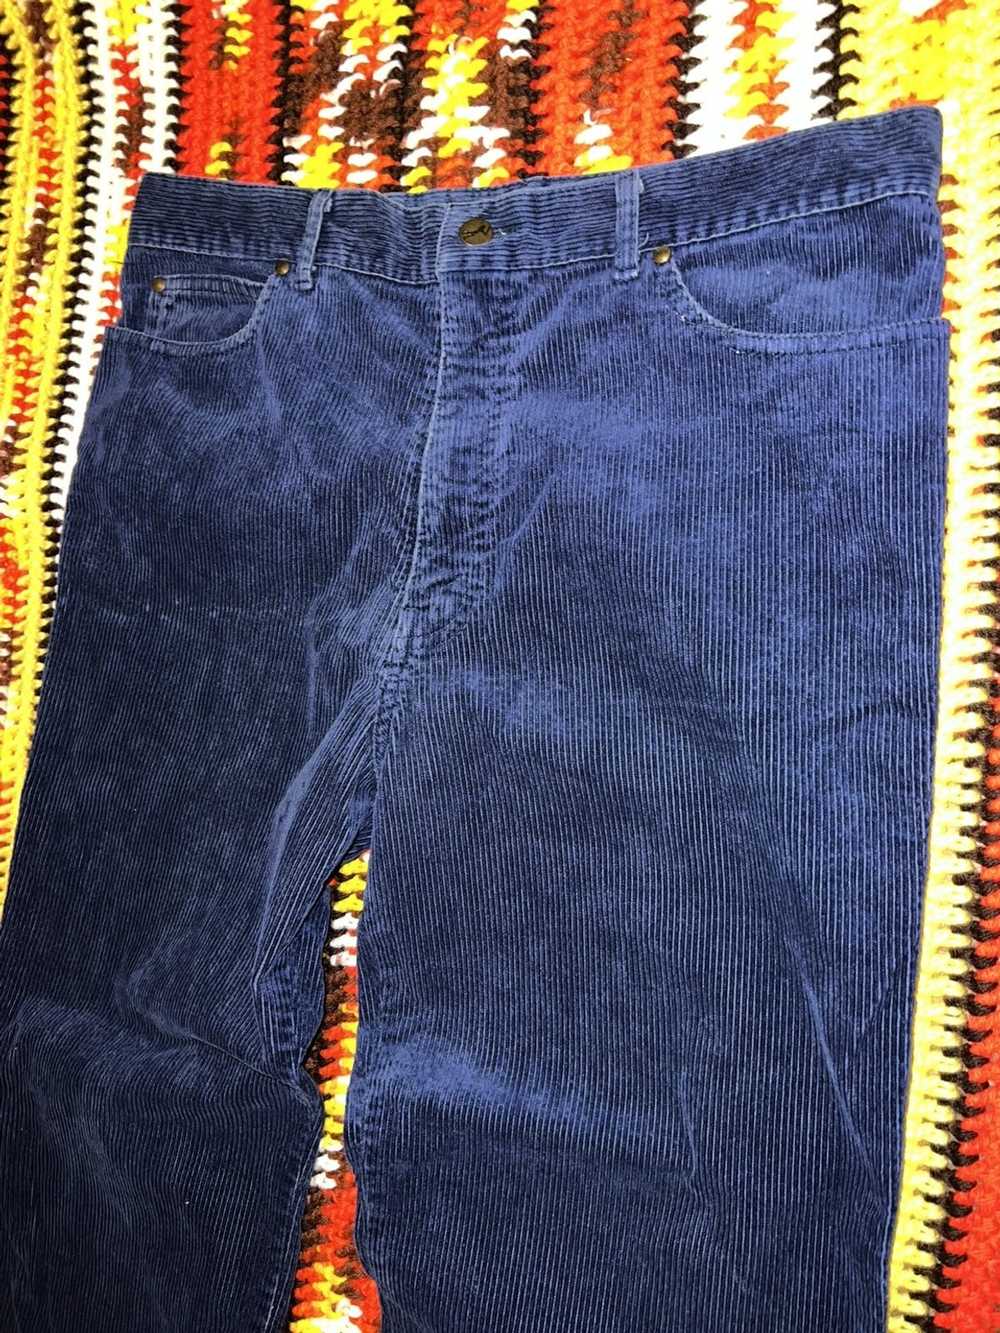 Vintage Vintage 90’s corduroy Pants Blue straight… - image 2